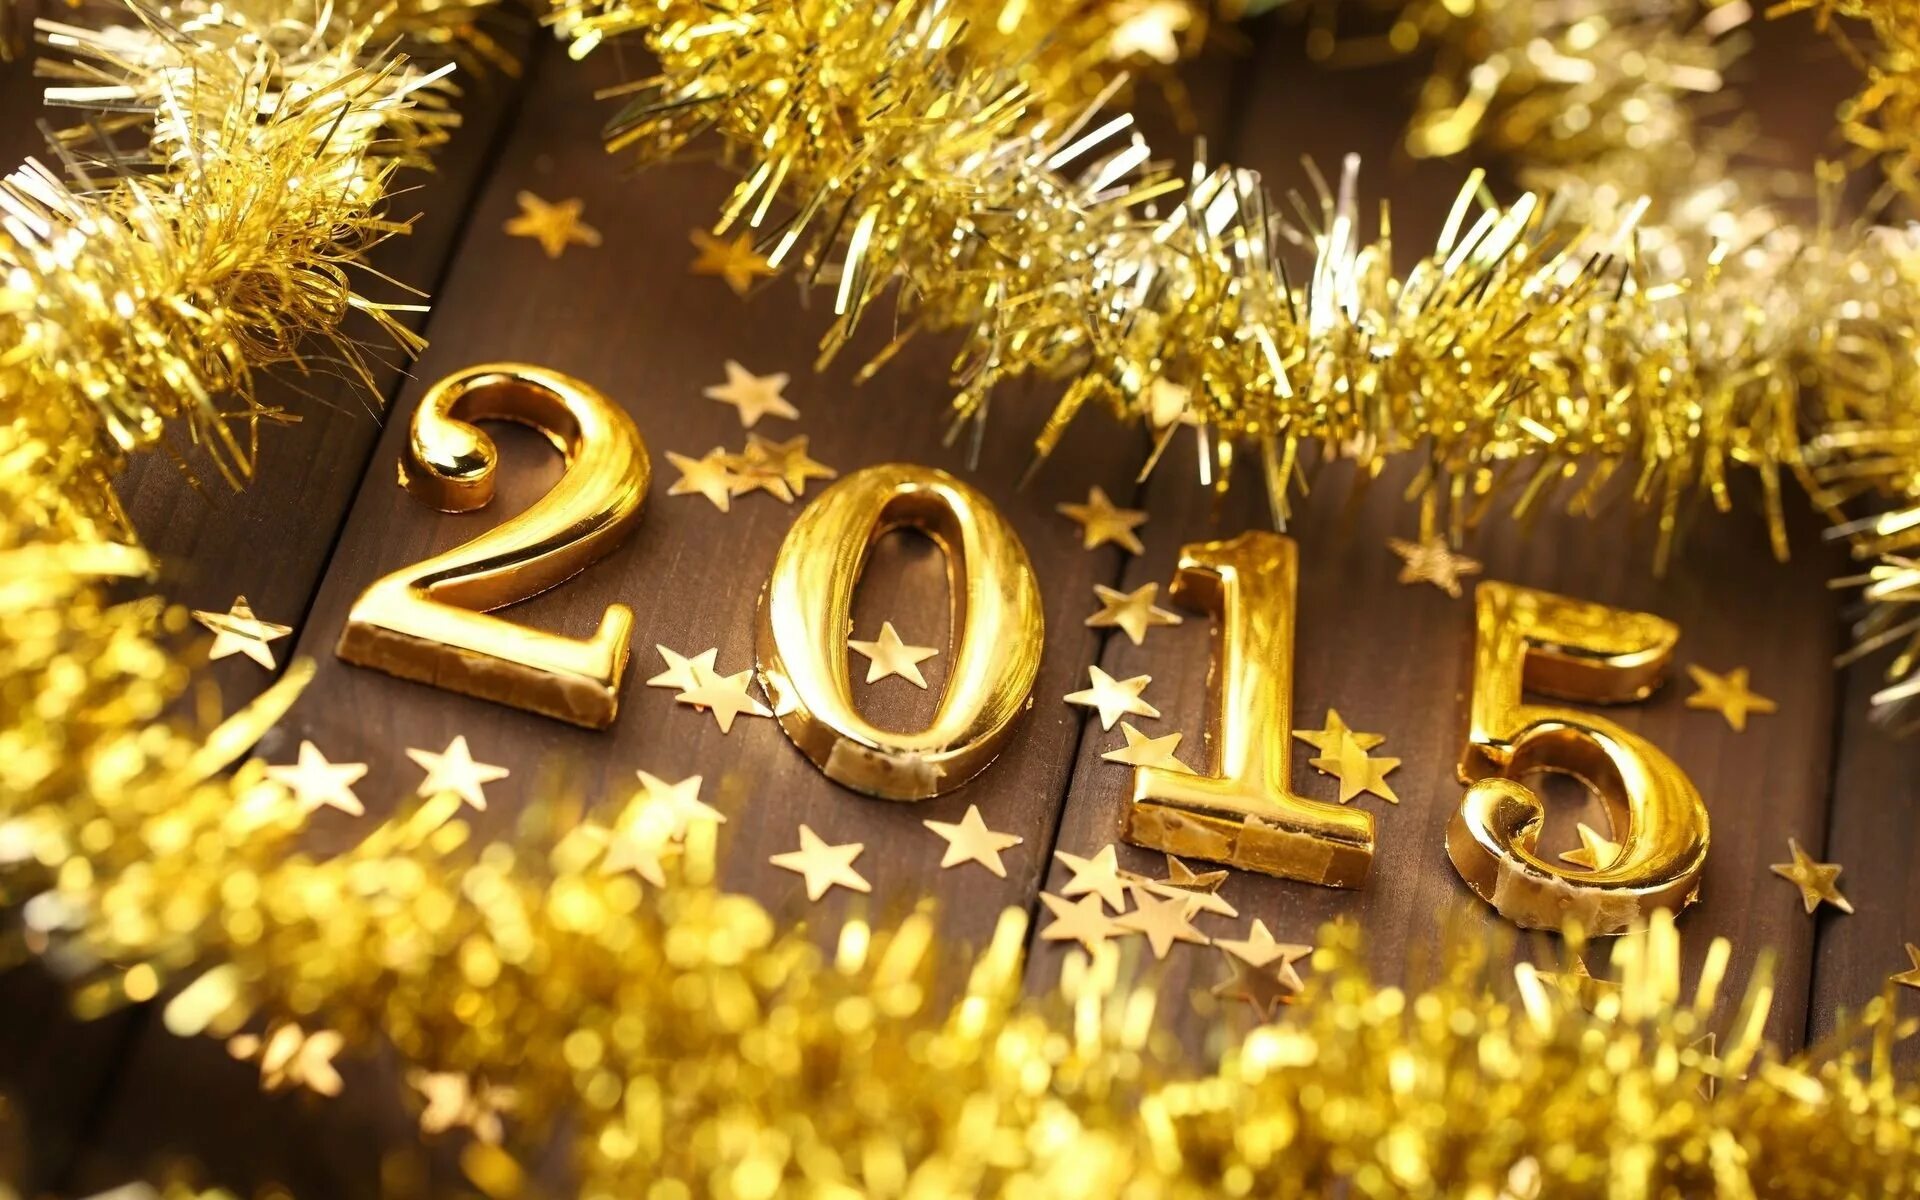 Обои на рабочий стол 23. С новым годом. С новым годом 2015. Новый год (праздник). Открытки новый год 2015.